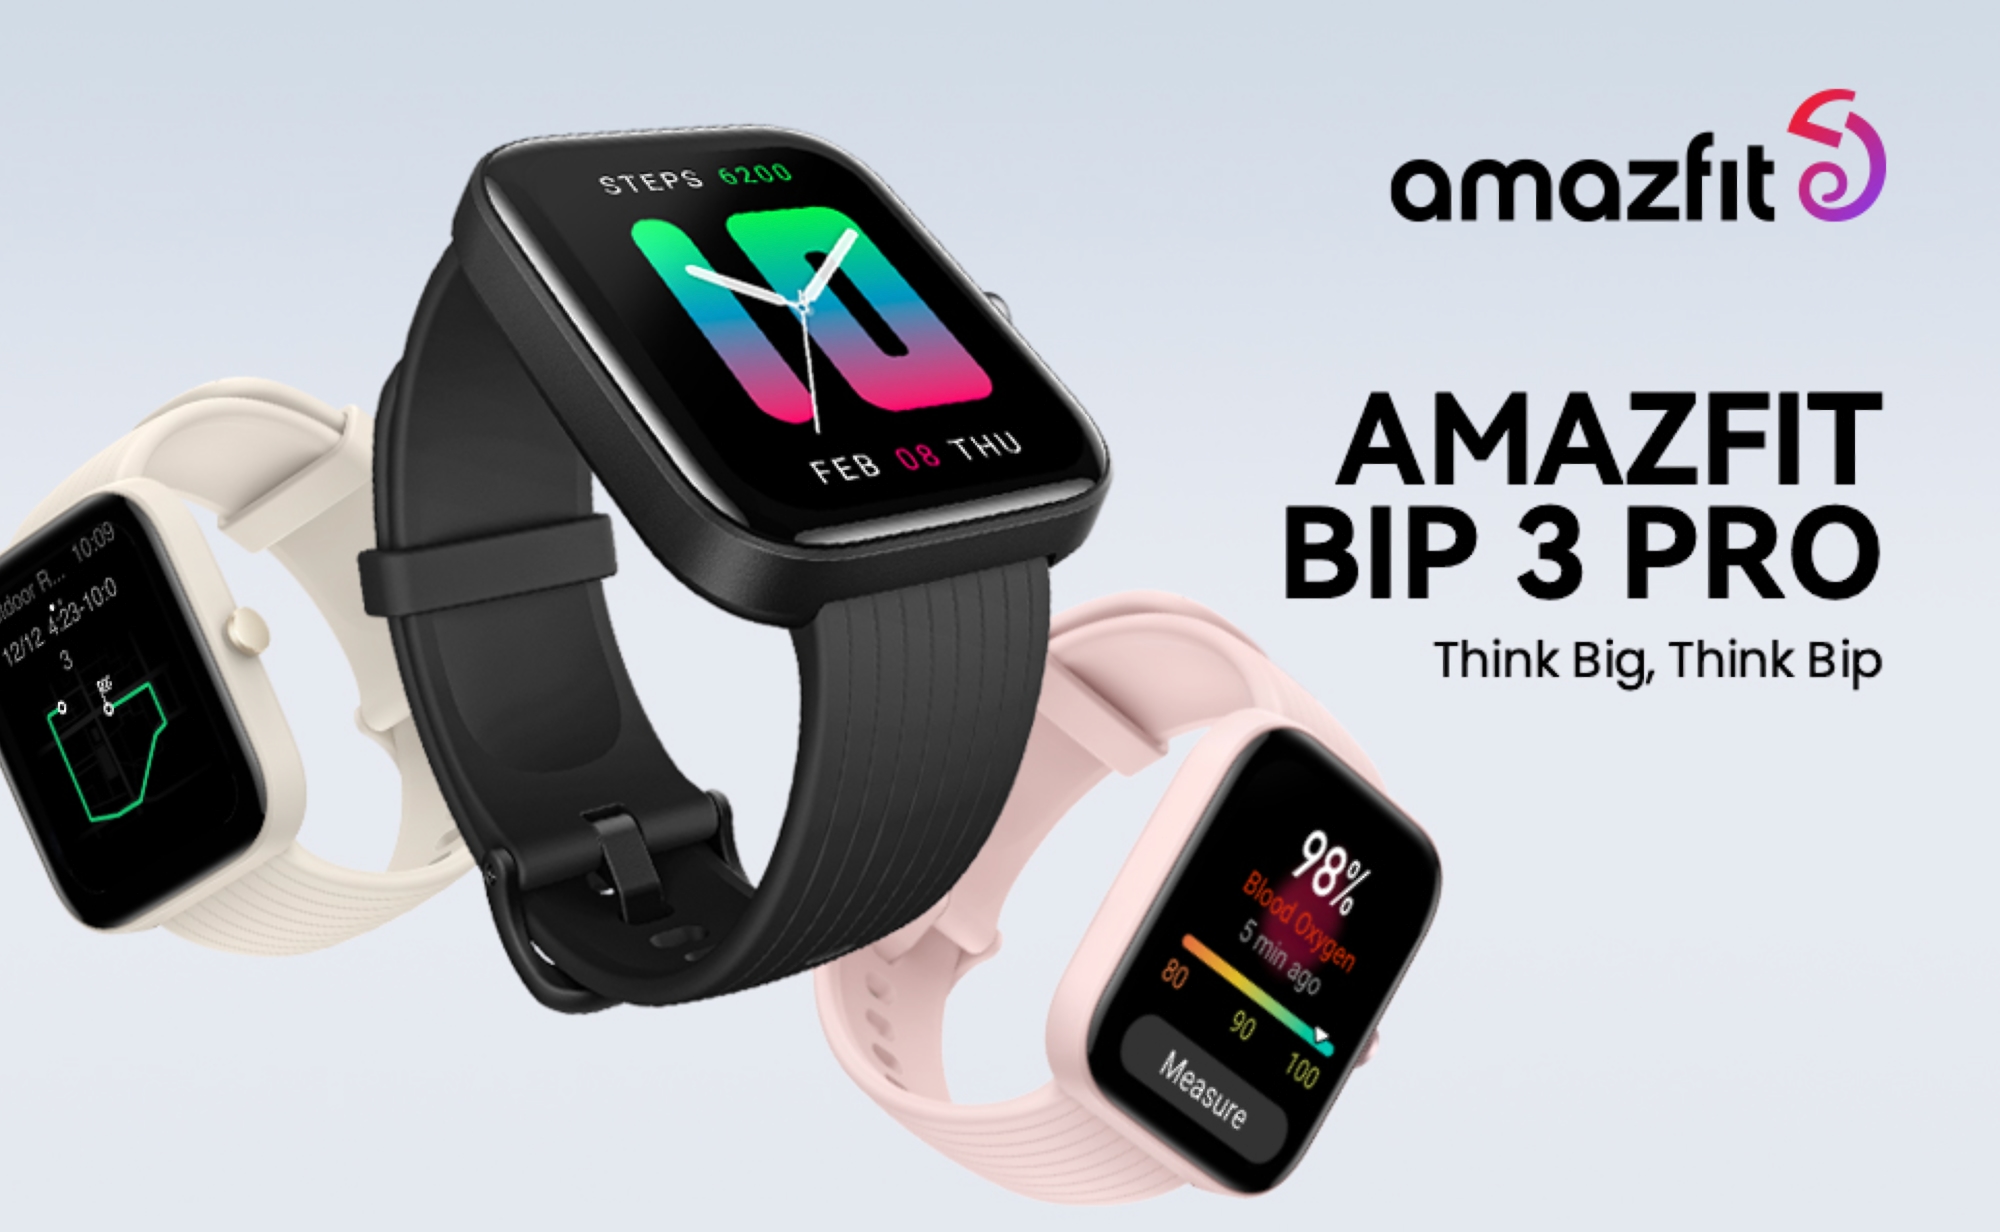 Amazfit Bip 3 Pro, con cuatro sistemas de navegación, compatibilidad con Alexa y hasta 14 días de batería, está de oferta en Amazon con un descuento de 15 dólares